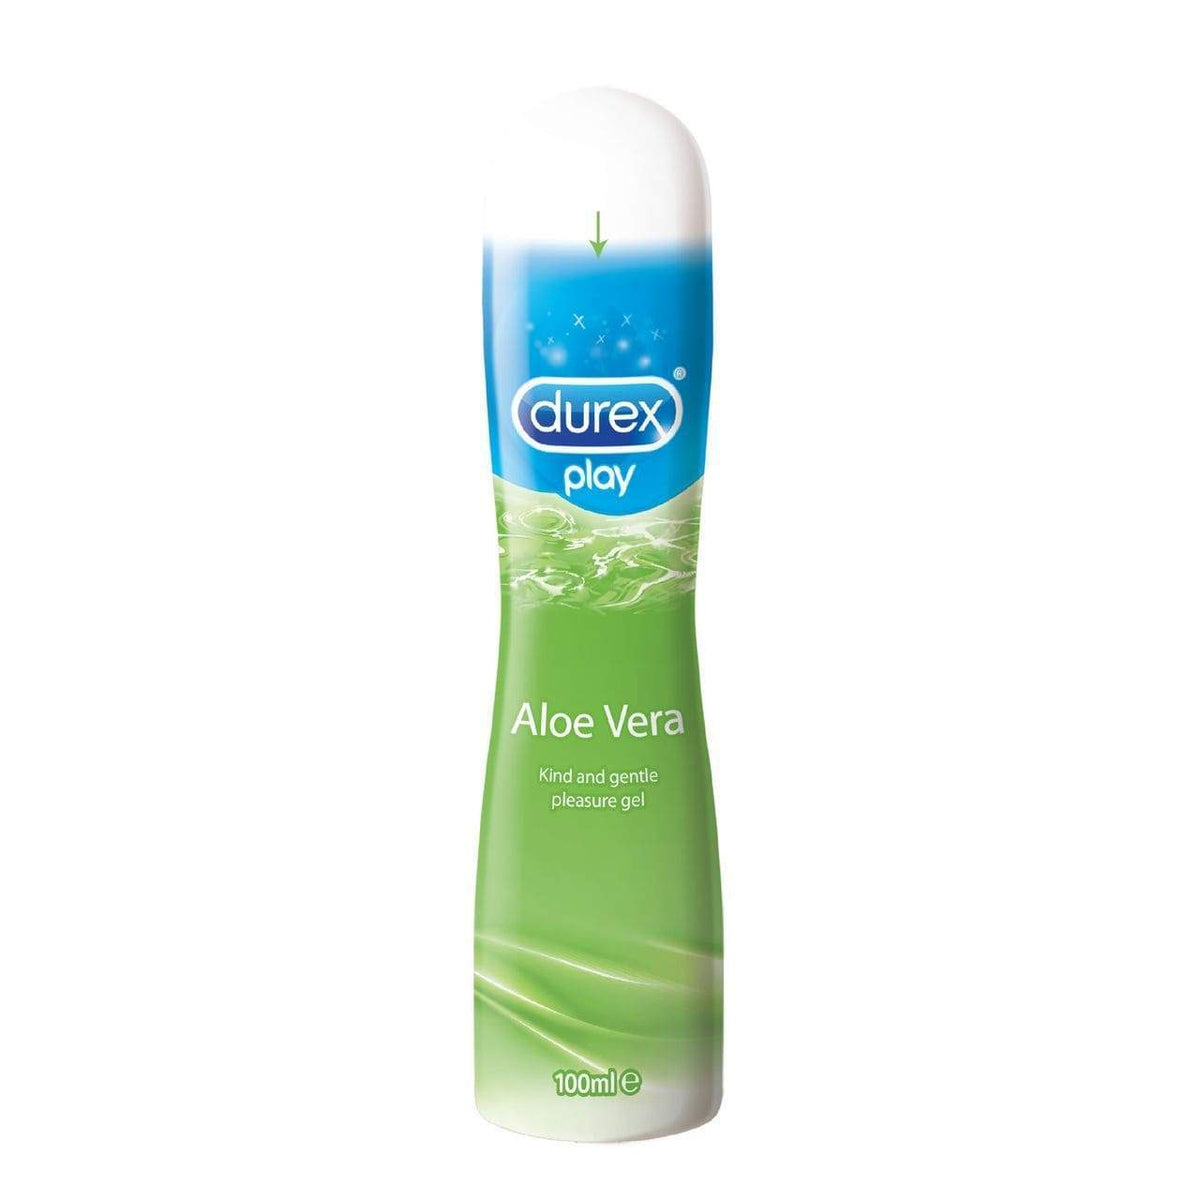 Durex - Play Aloe Vera Pleasure Gel 100 ml (Lube) -  Lube (Water Based)  Durio.sg